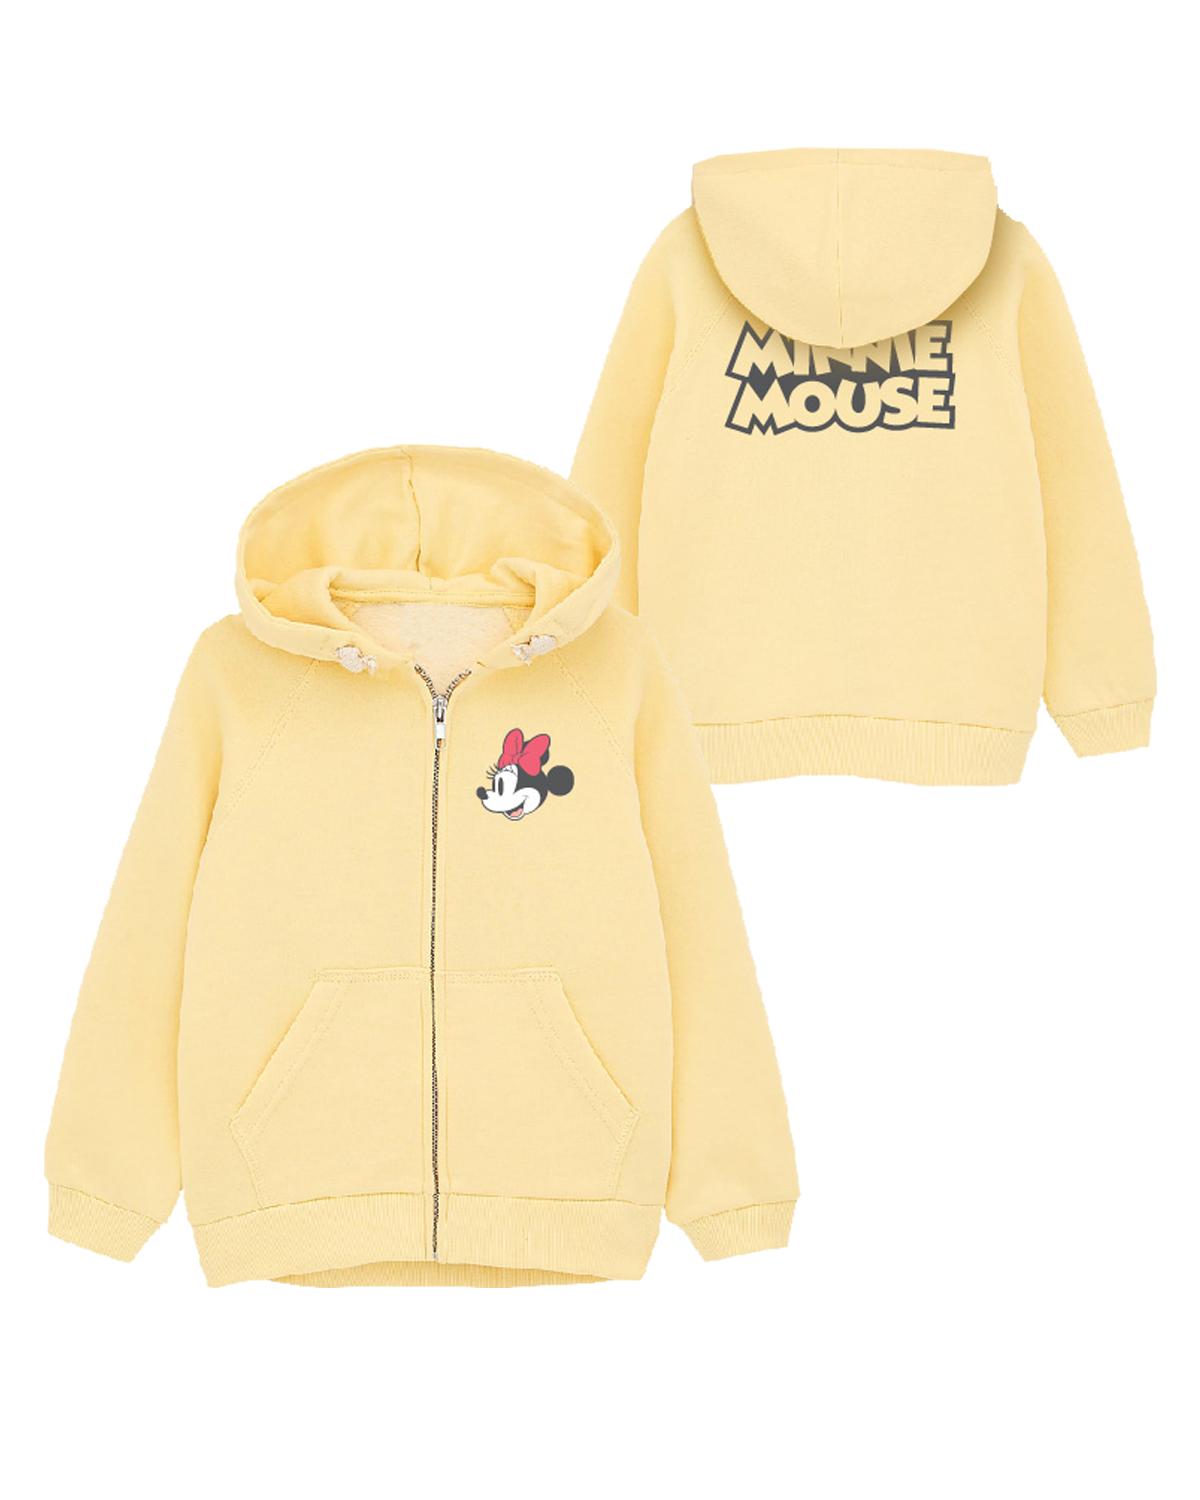 Minnie Mouse - licence Dívčí mikina - Minnie Mouse 52187834, žlutá Barva: Žlutá, Velikost: 110